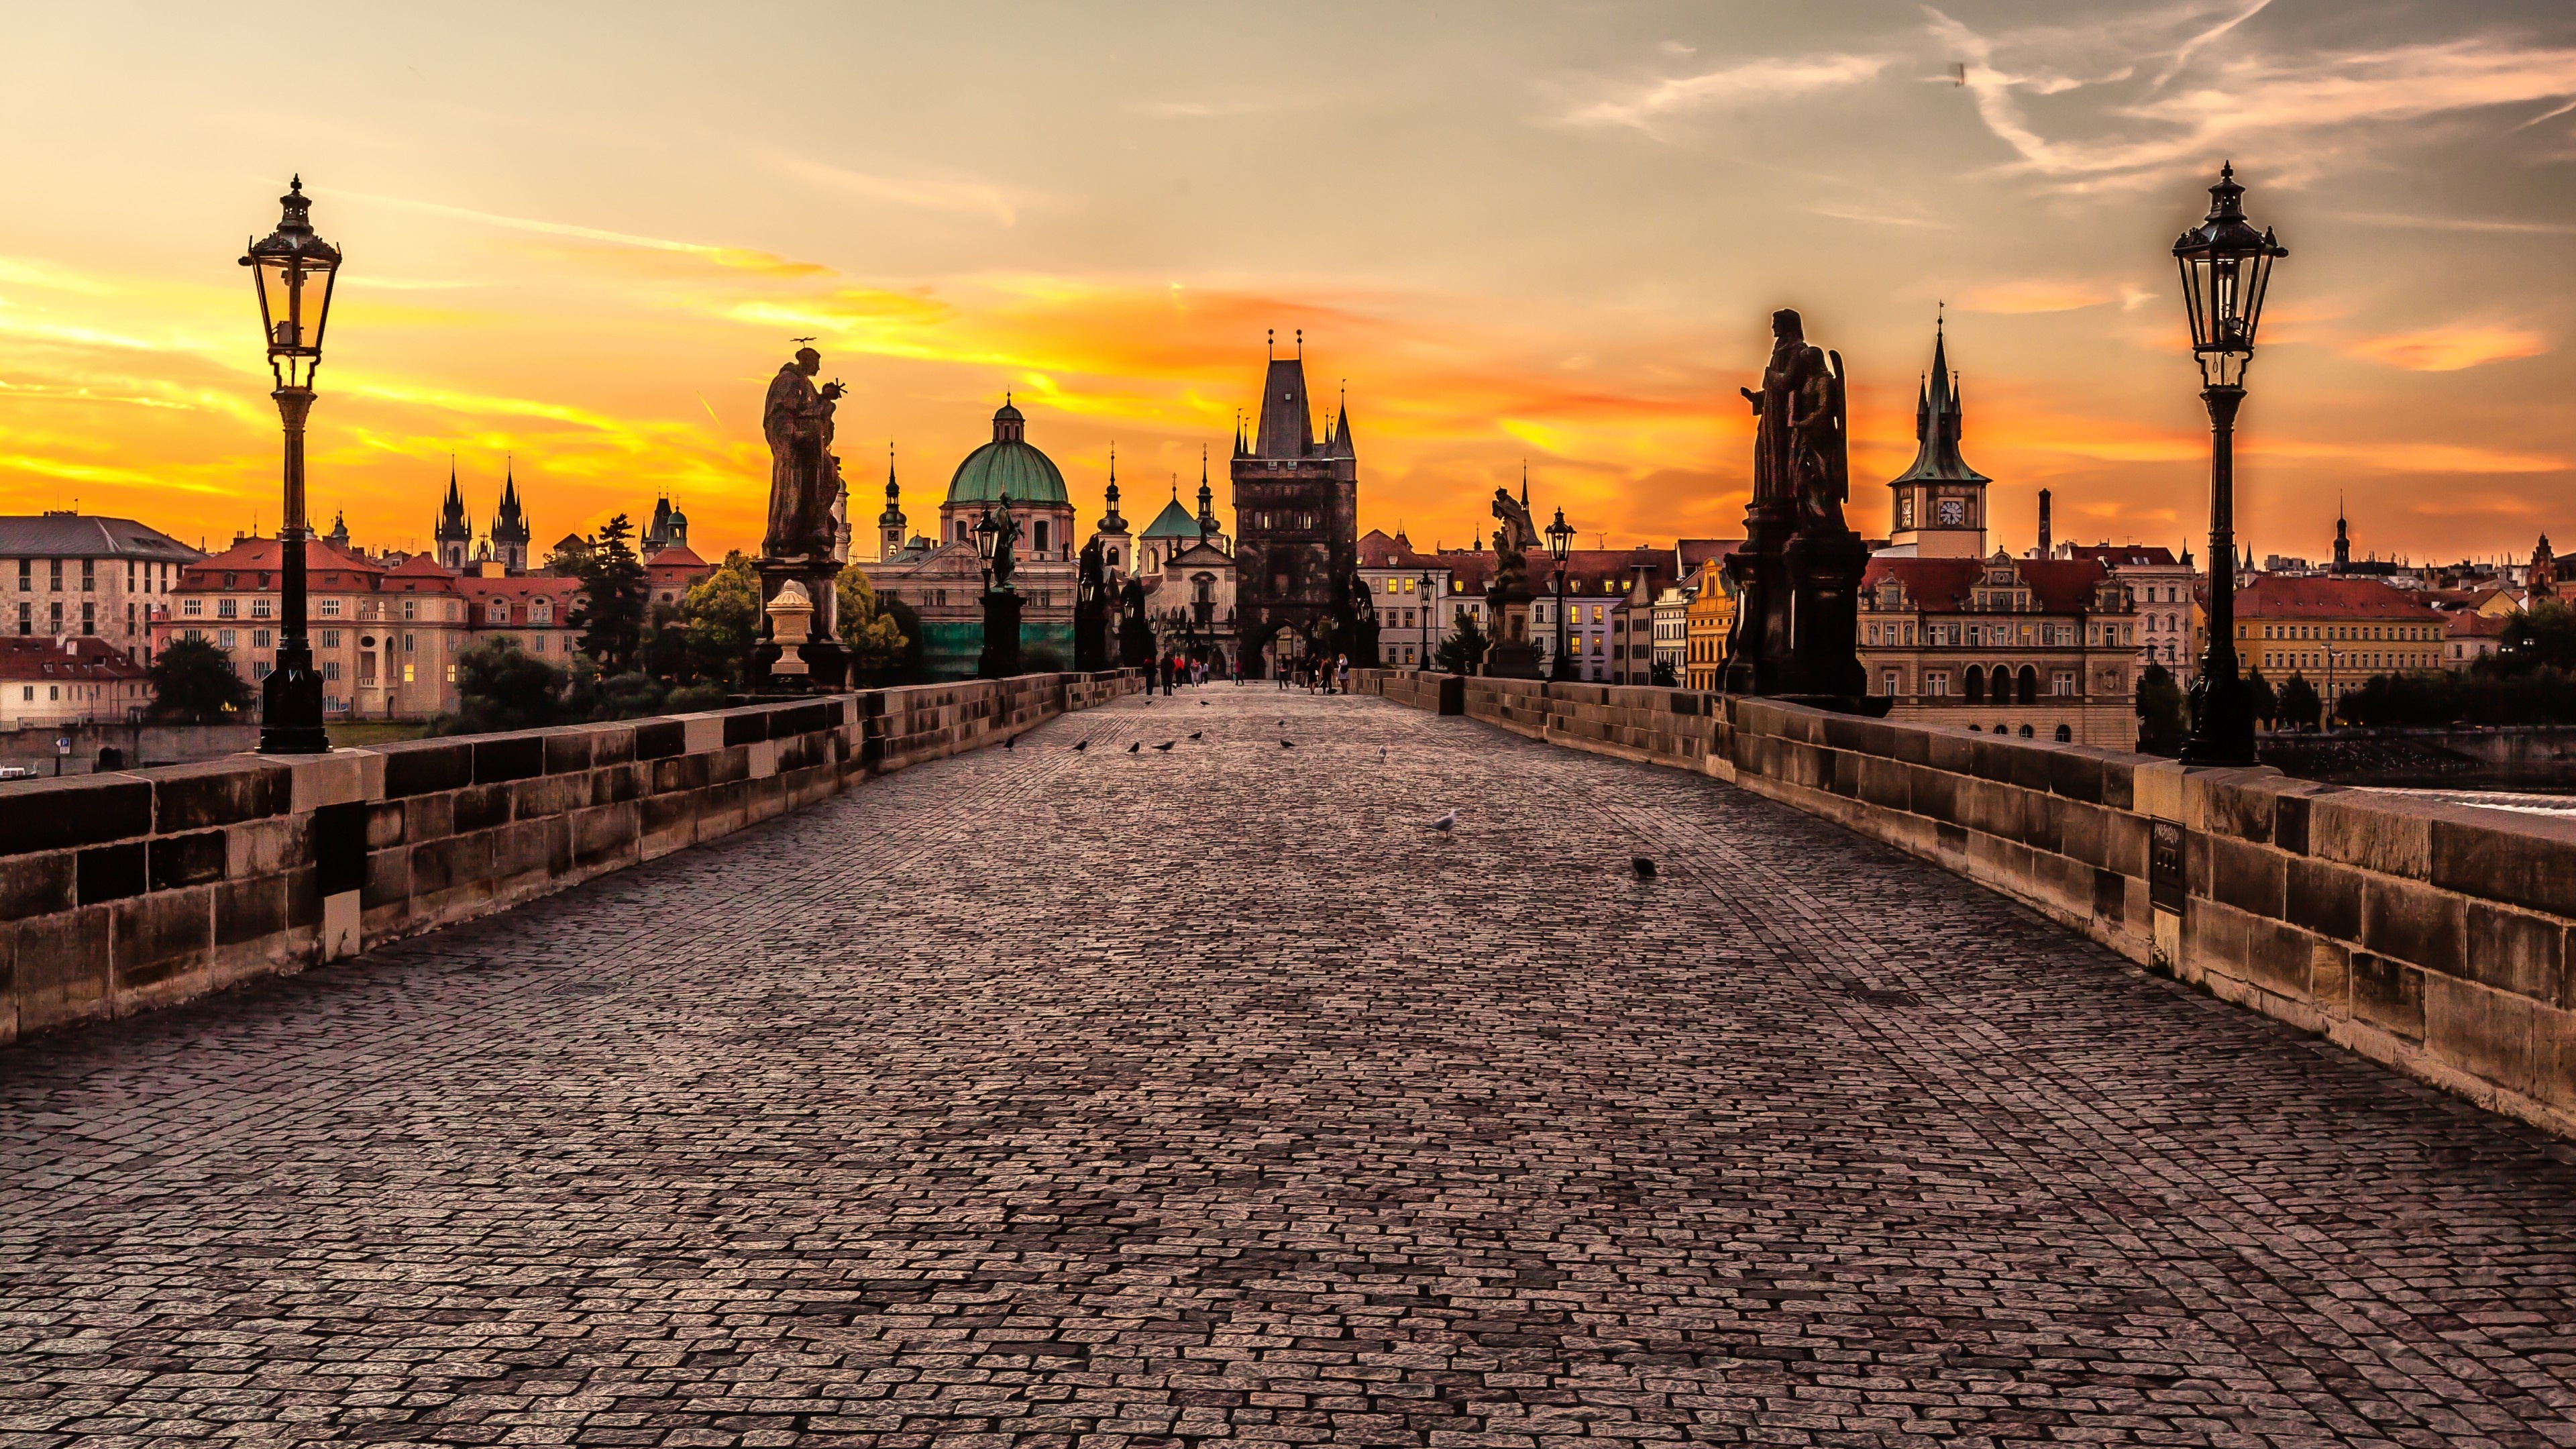 Mystic Prague tour, Czech Republic's tourism, Authentic travel experience, Enchanting wallpaper, 3840x2160 4K Desktop